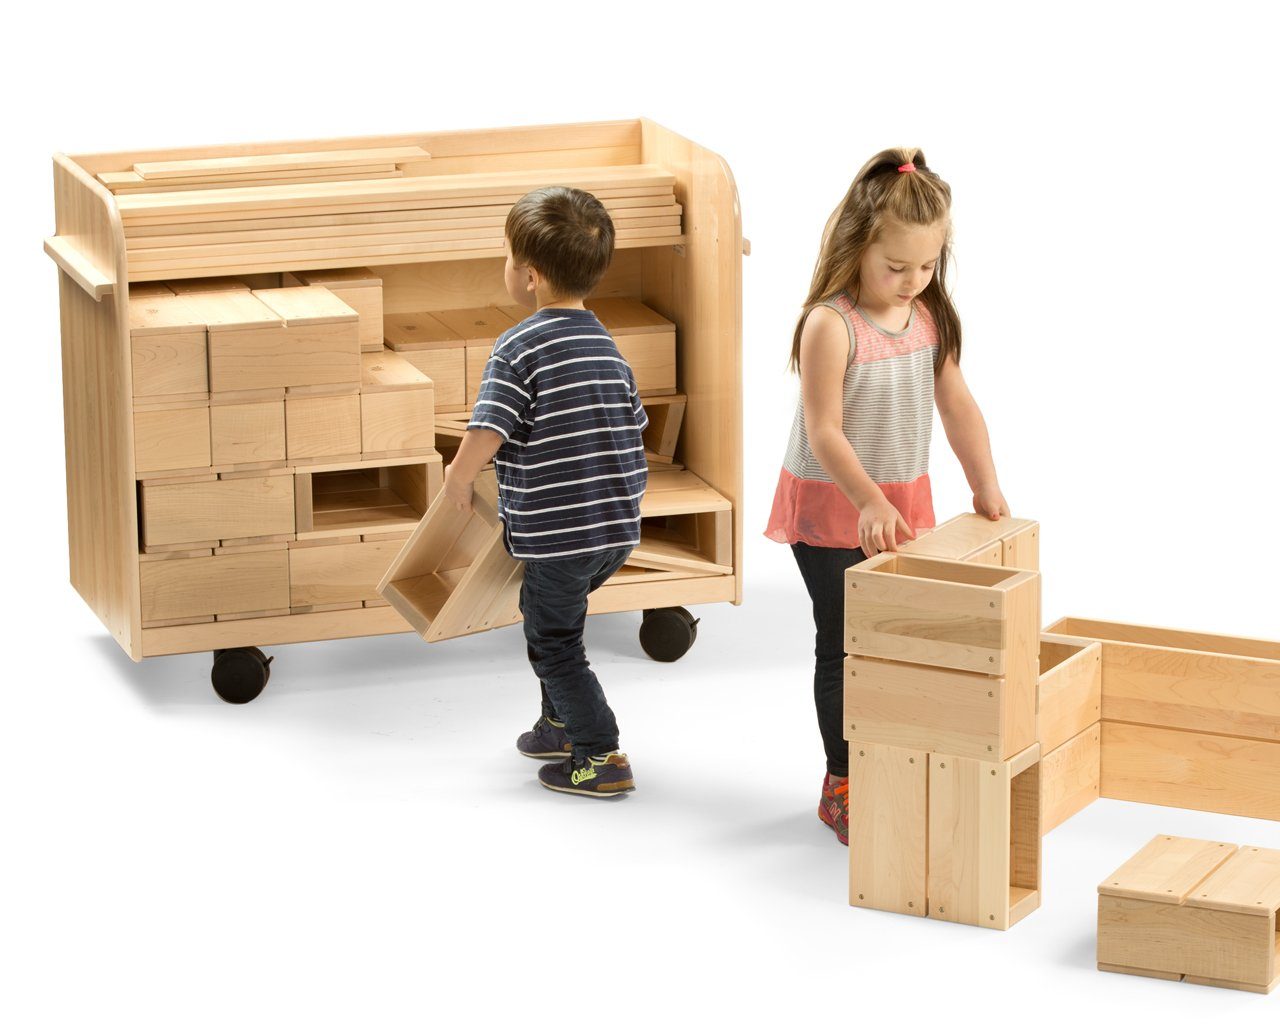 Hollow Block Storage Cart by Community Playthings - louisekool